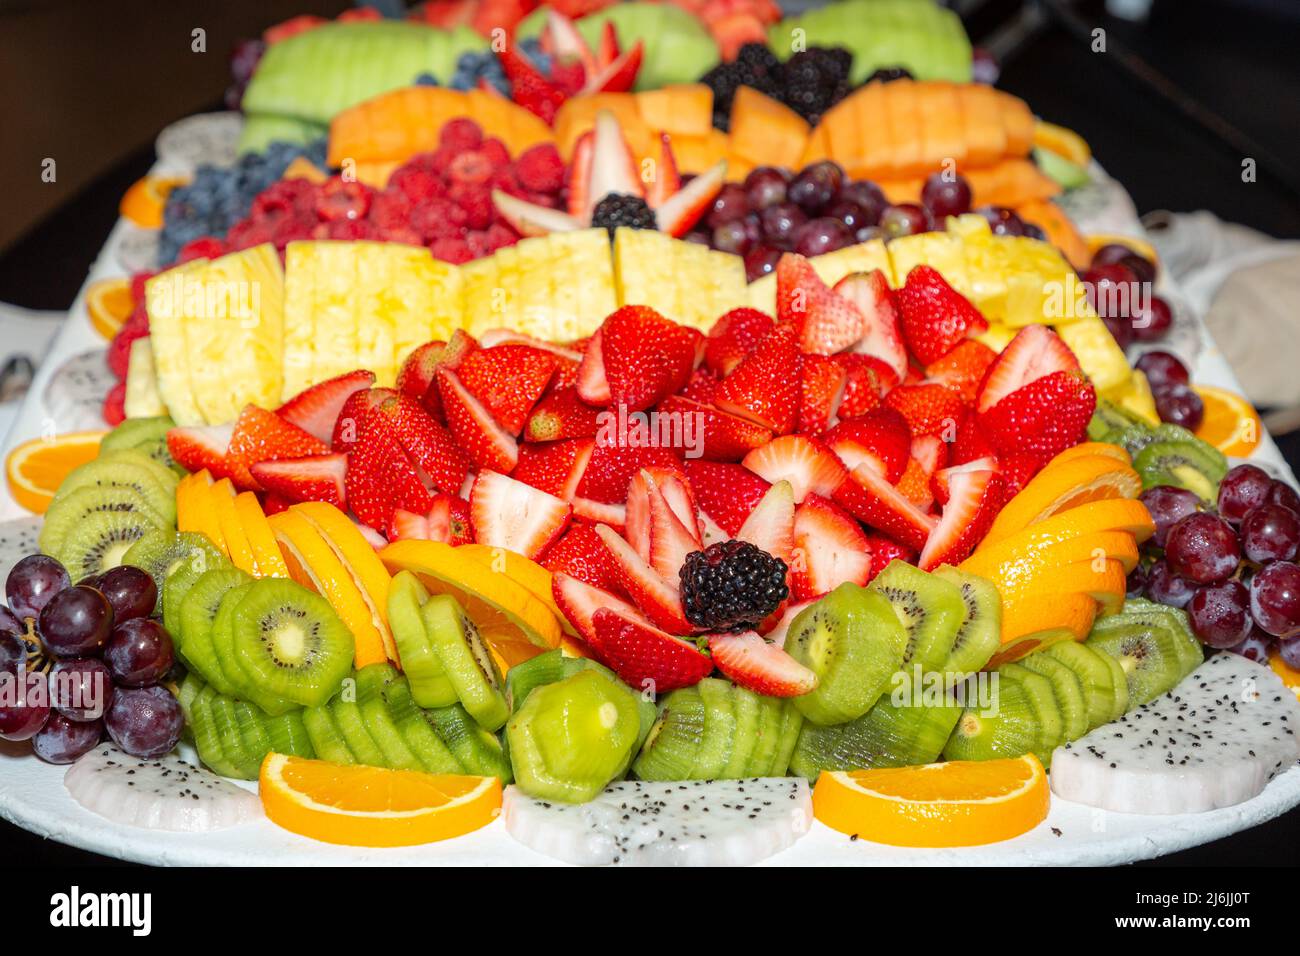 Fruits colorés, coupés en tranches et servis sous forme de buffet pour le déjeuner Banque D'Images